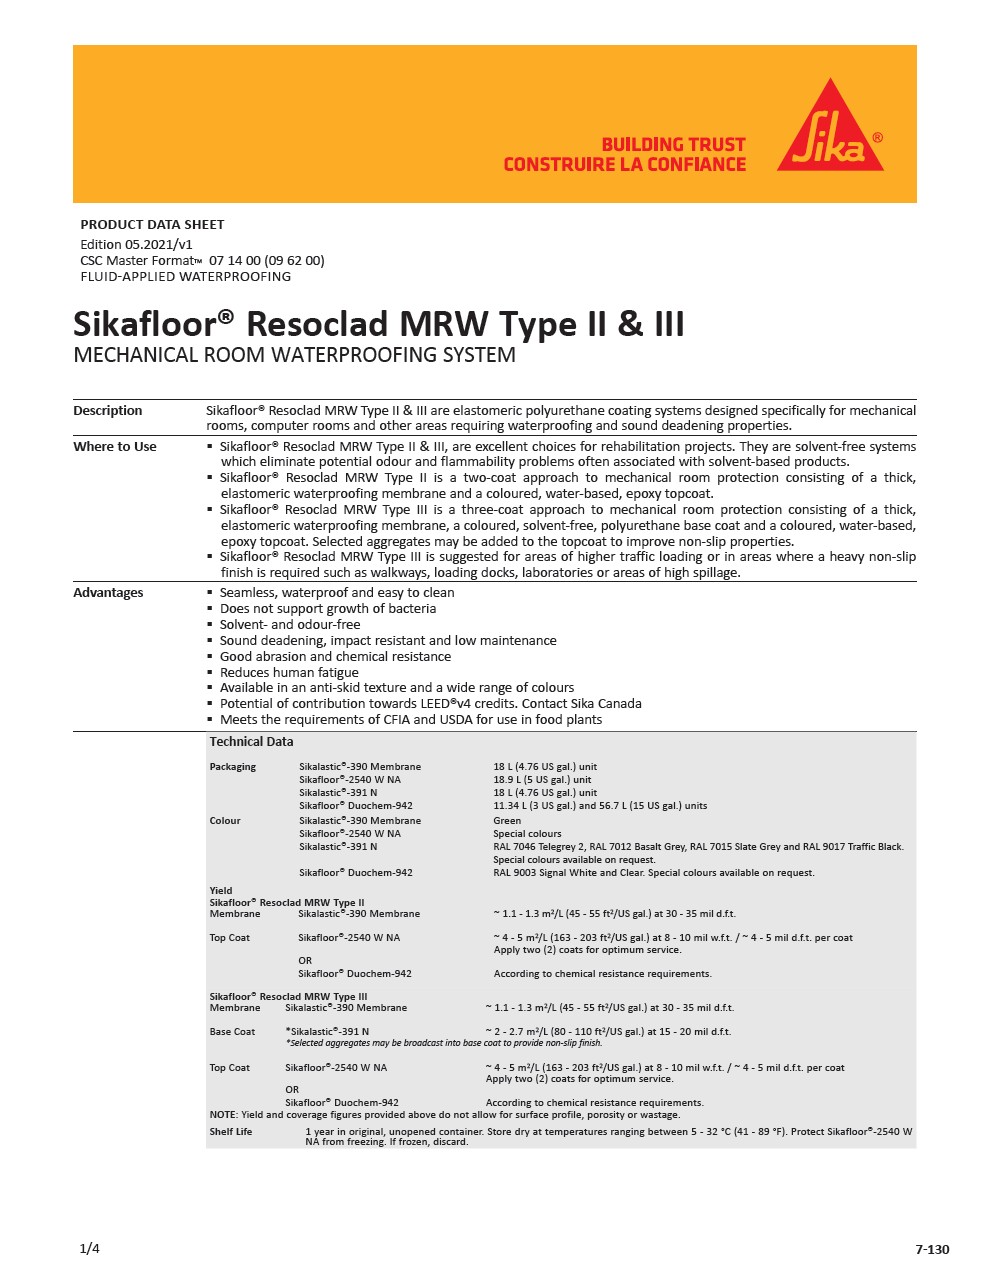 Sikafloor® Resoclad MRW Type II & III